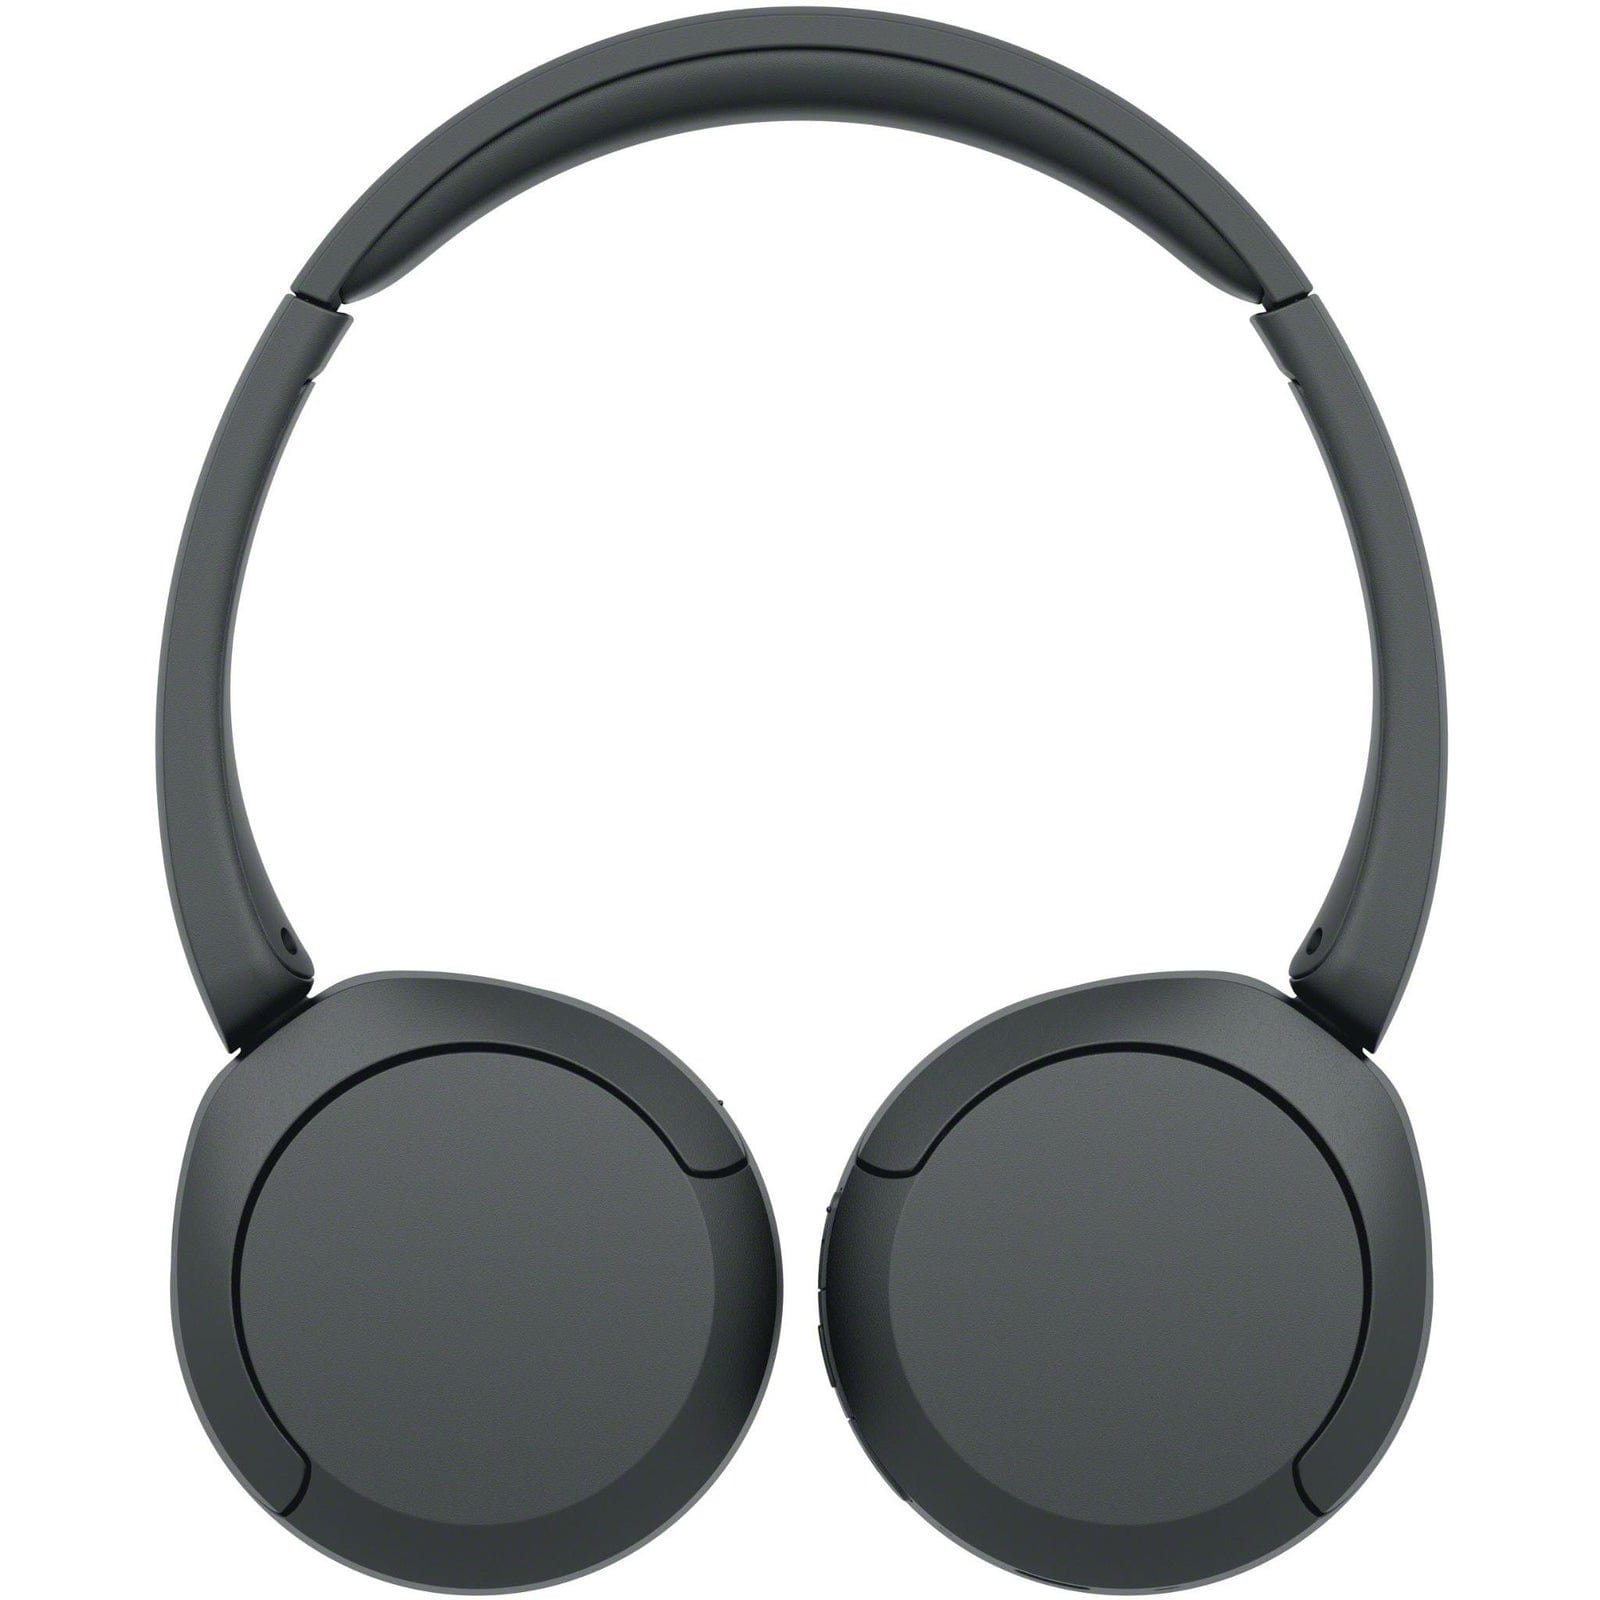 Sony Wireless On-Ear Headphones (Black)